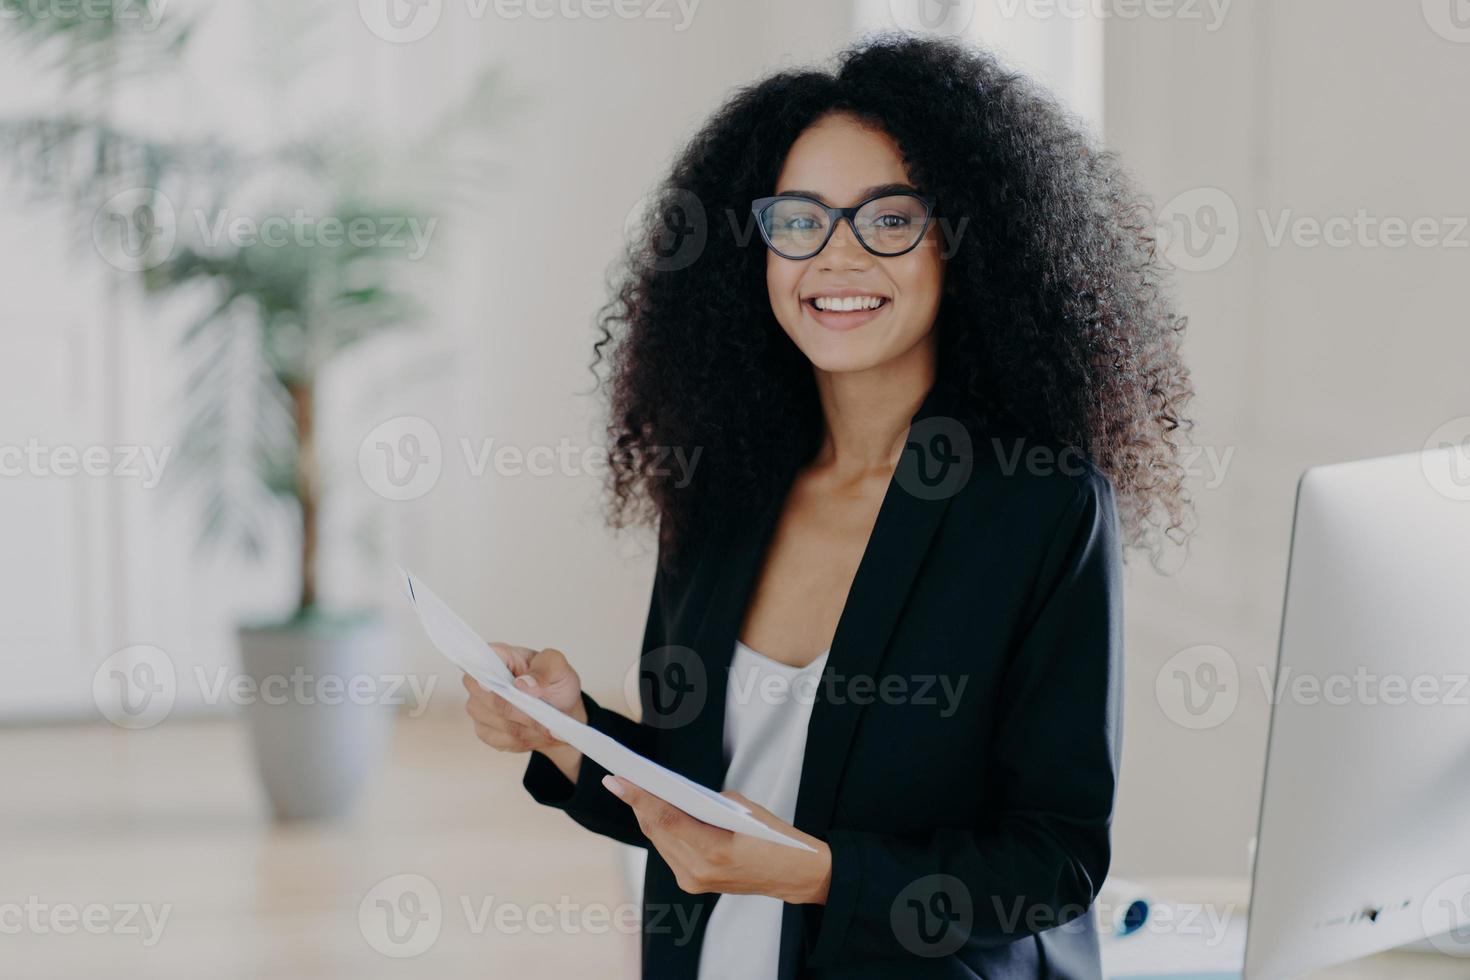 foto av glad kvinnlig entreprenör med afrofrisyr, studerar dokumentation, bär glasögon och eleganta kläder, står i kontorsinredning, förbereder sig för att presentera sina affärsidéer för kollegor